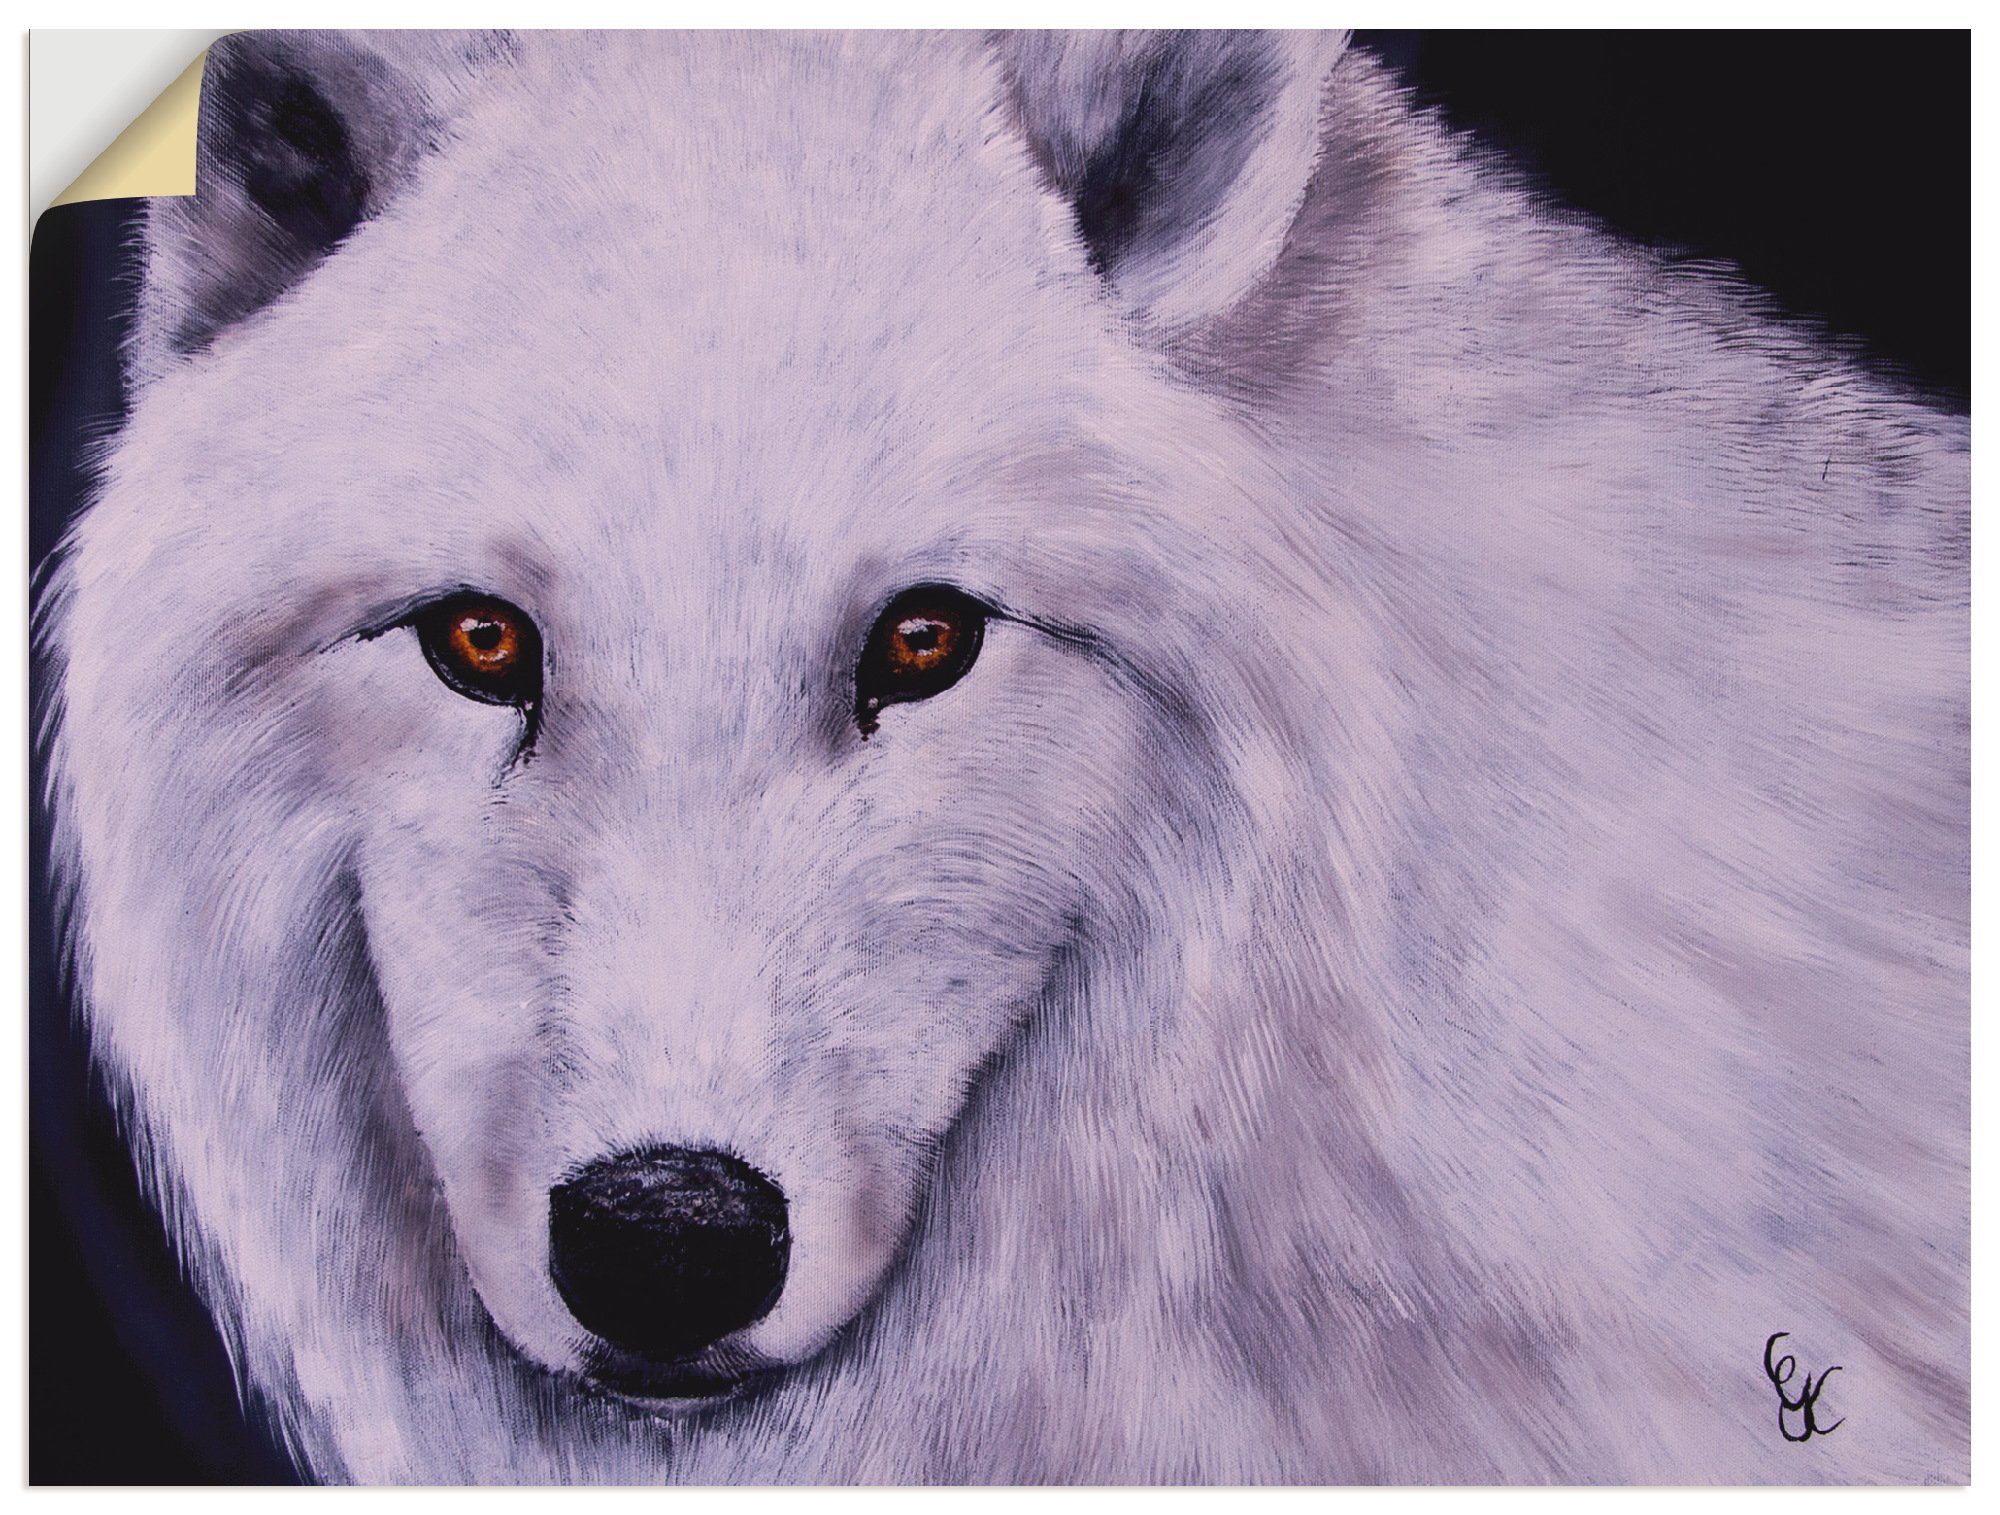 Artland Artprint Witte wolf in vele afmetingen & productsoorten - artprint van aluminium / artprint voor buiten, artprint op linnen, poster, muursticker / wandfolie ook geschikt vo